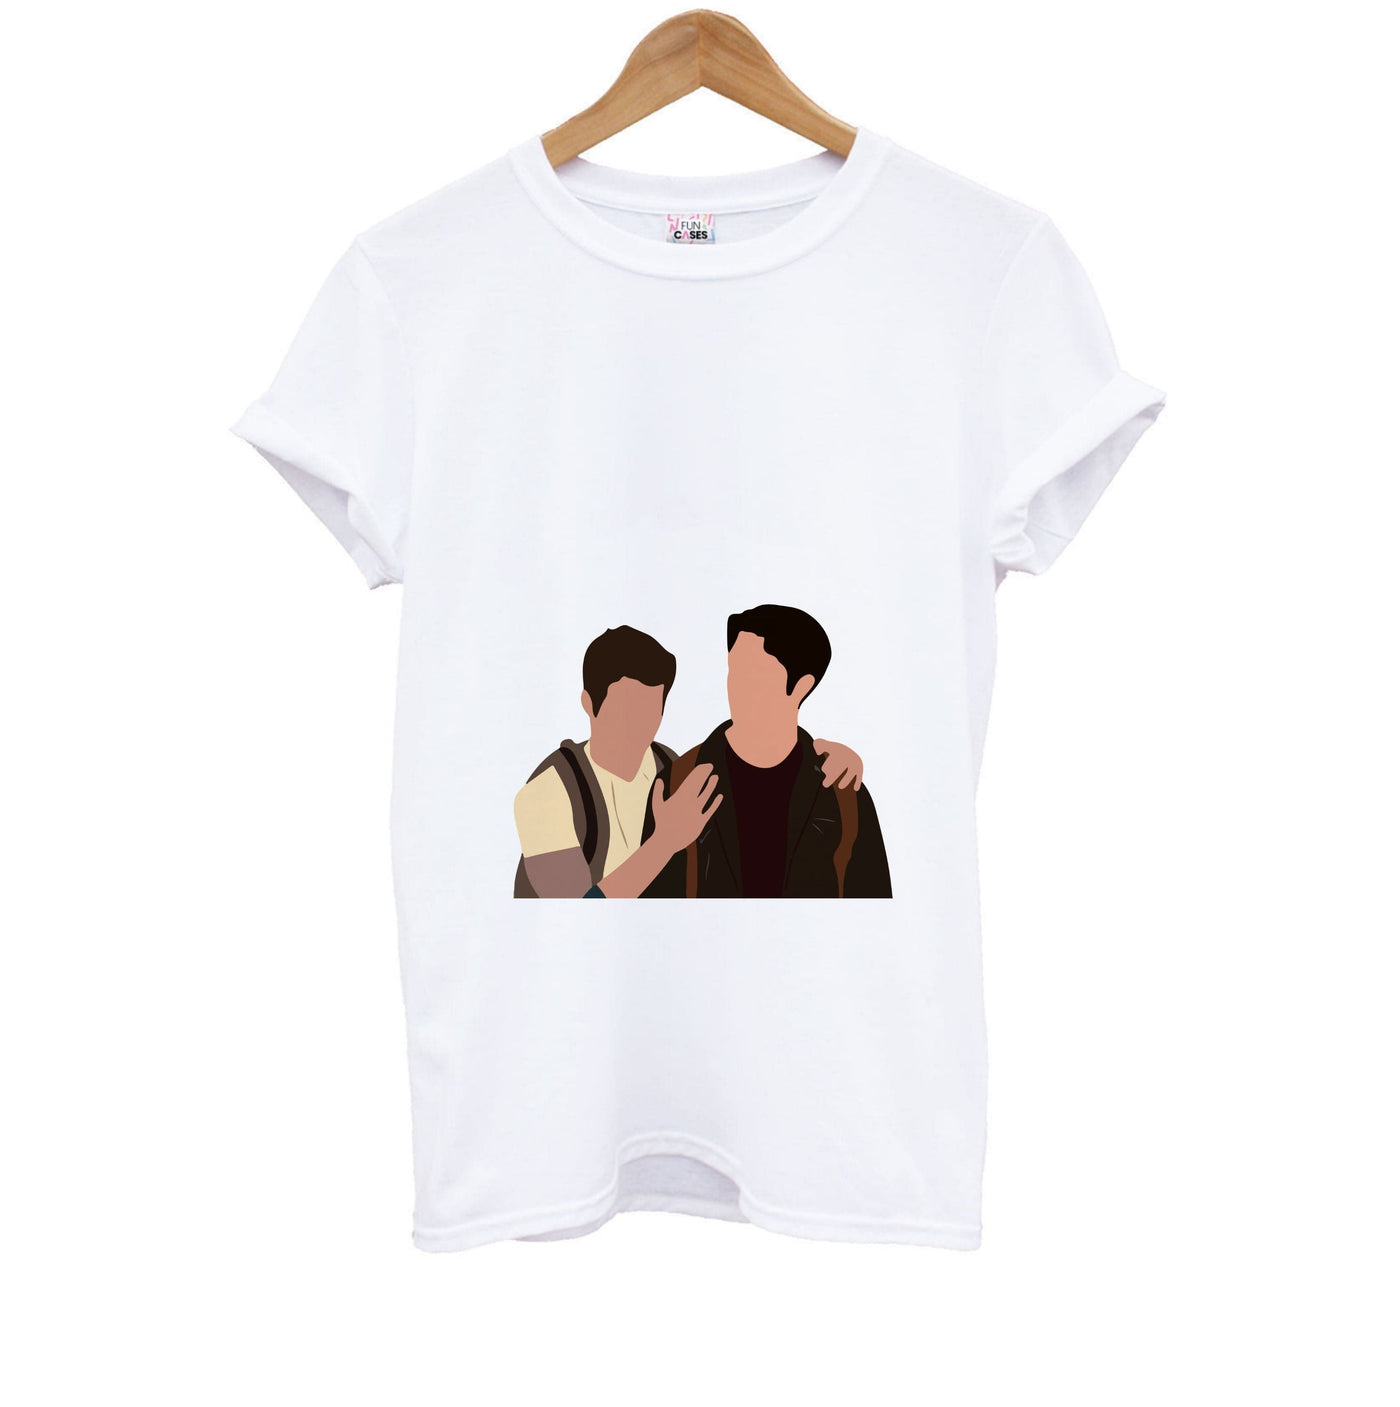 Scott and Stiles - Teen Wolf  Kids T-Shirt